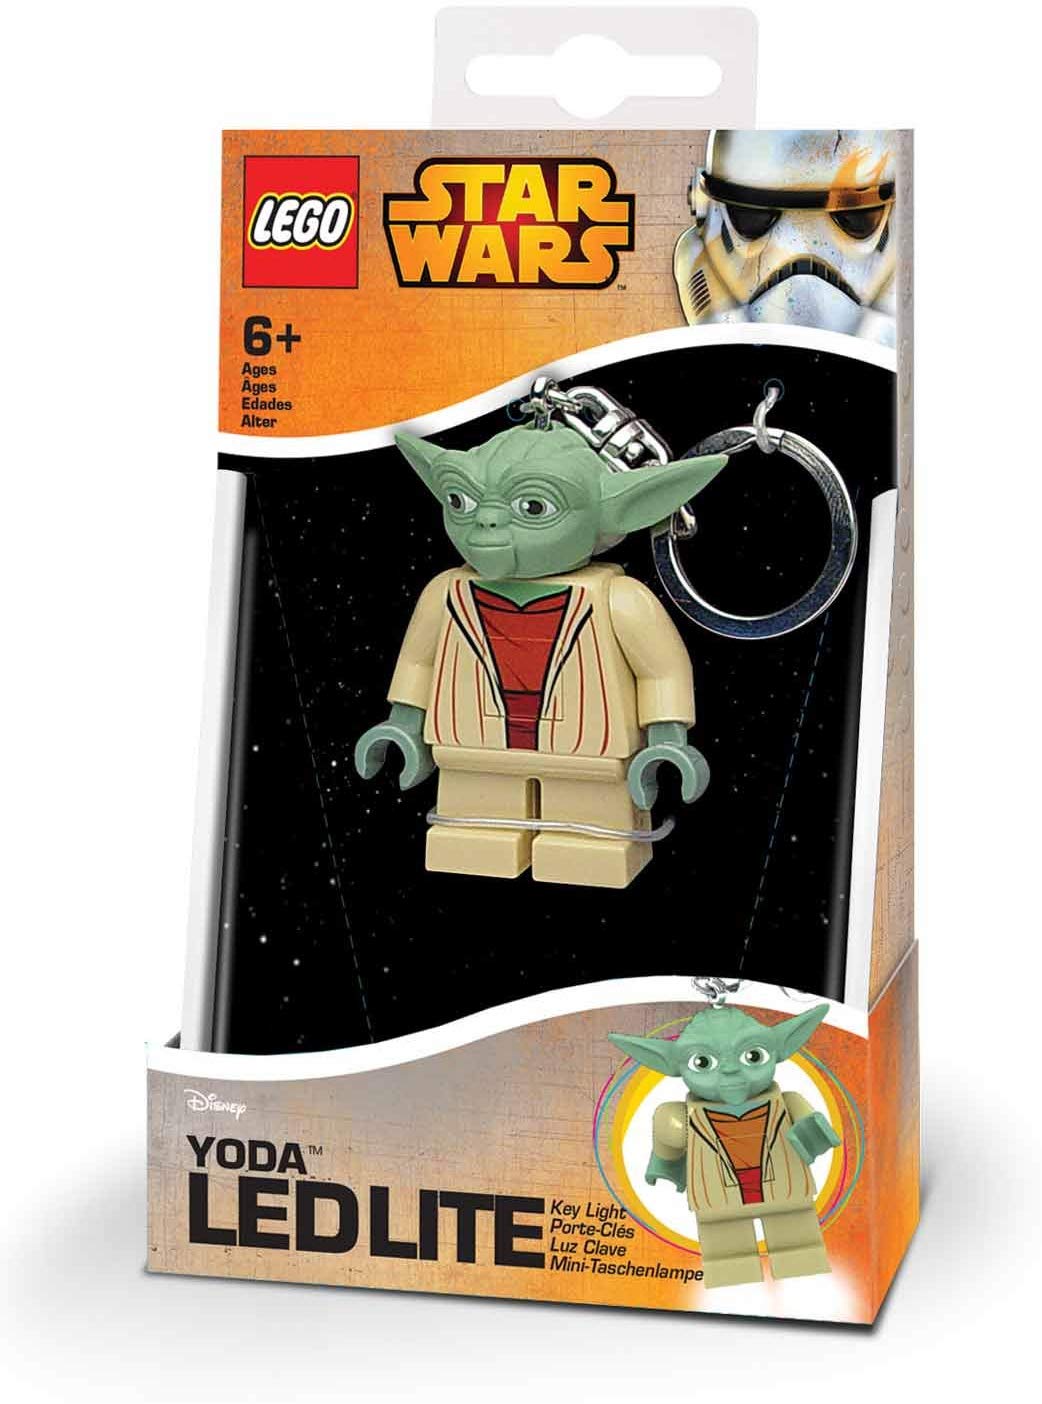 Lego 23070 – Star Wars Yoda Case/Mini Torch, 7.6 Cm